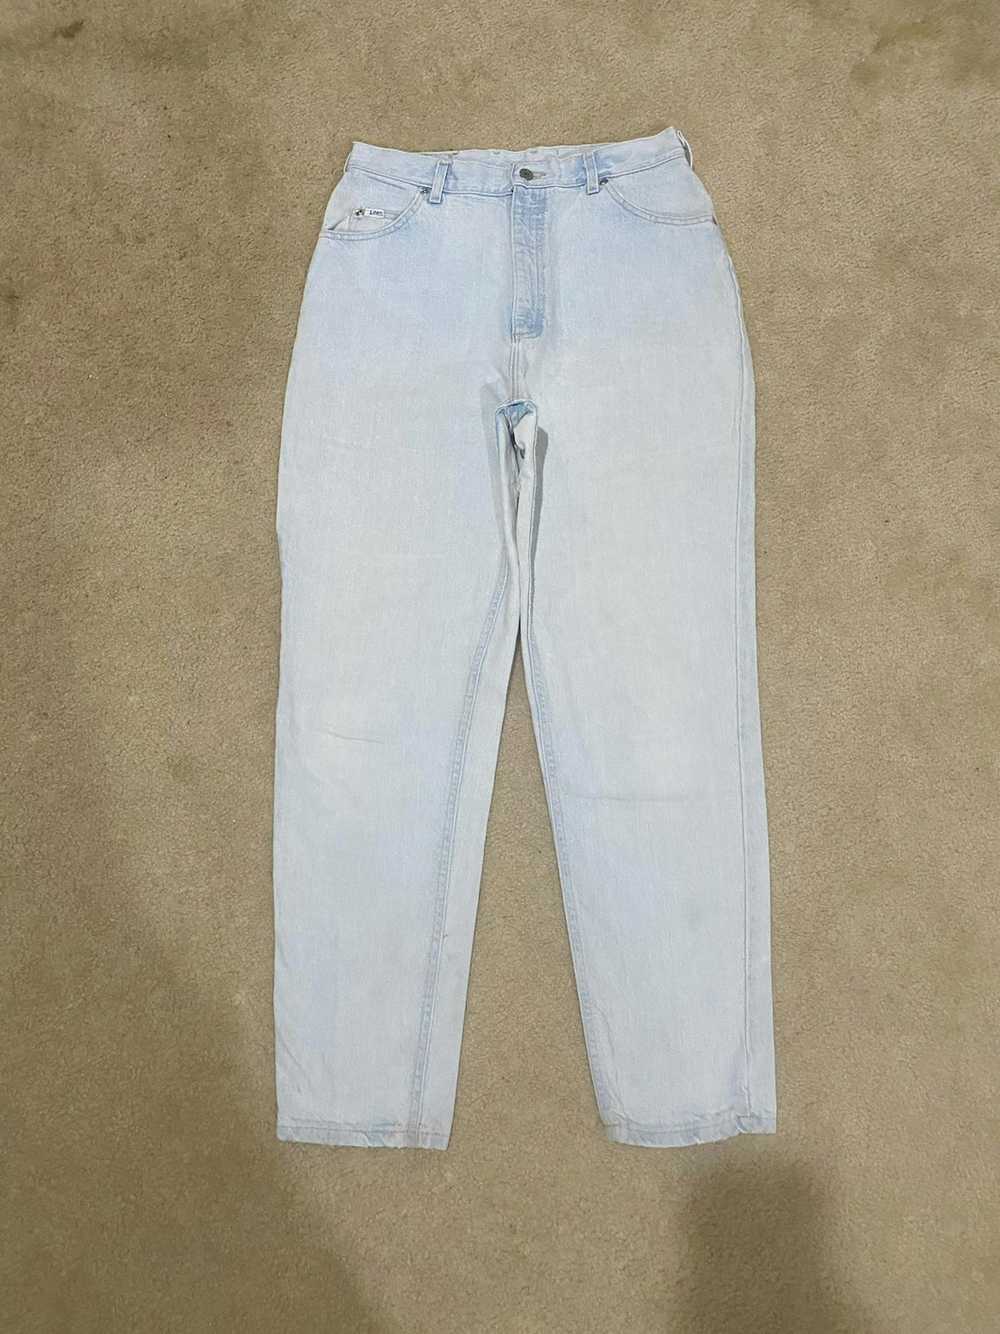 Lee × Vintage Vintage Lightwash Lee Denim Jeans - image 1